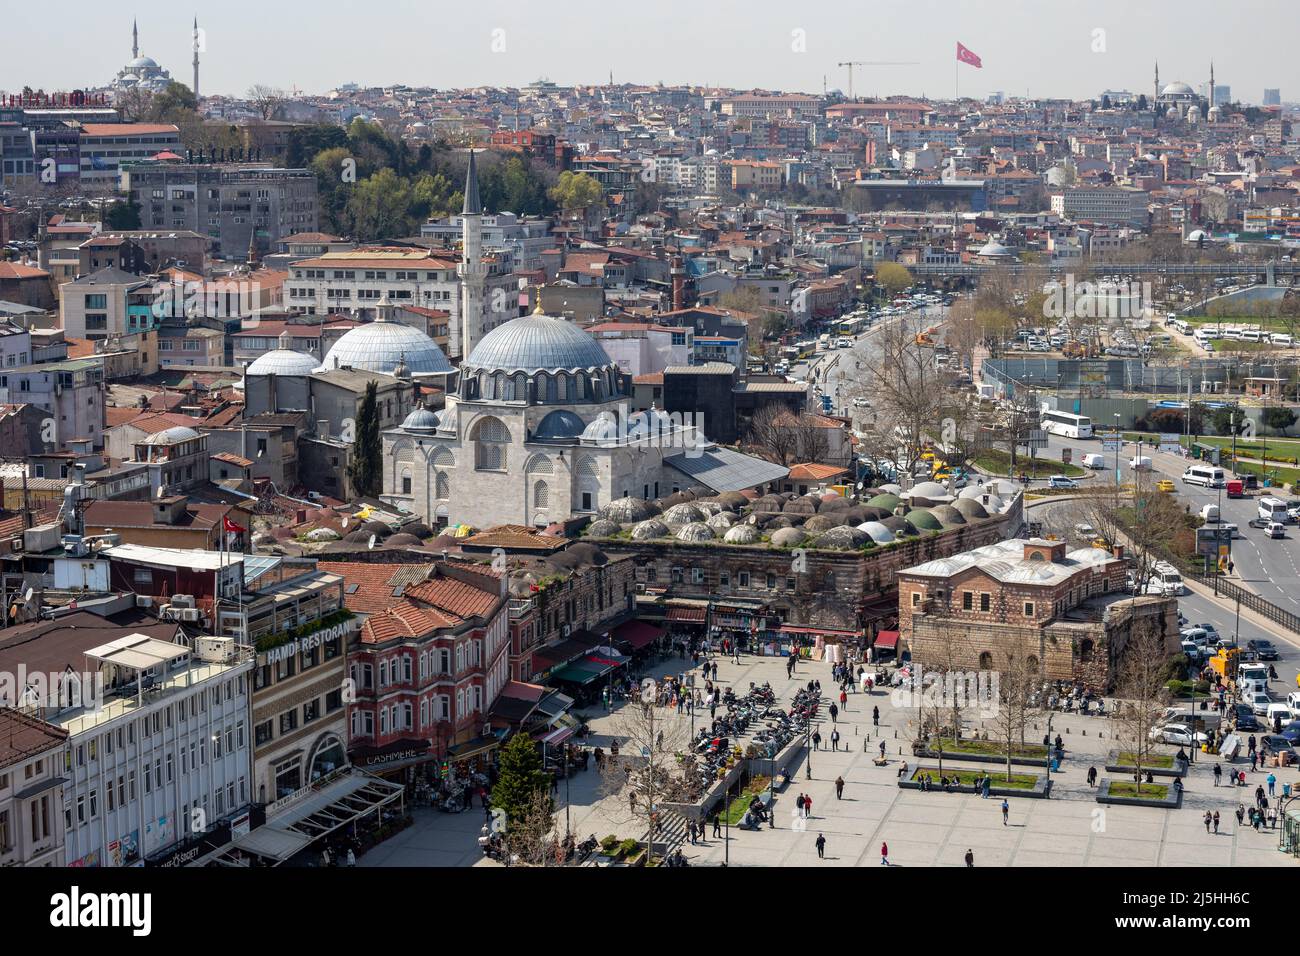 Blick auf die Rustem Pasha Moschee im Hasircilar Basar im Tahtakale-Viertel des Fatih-Viertels von Istanbul, Türkei Stockfoto